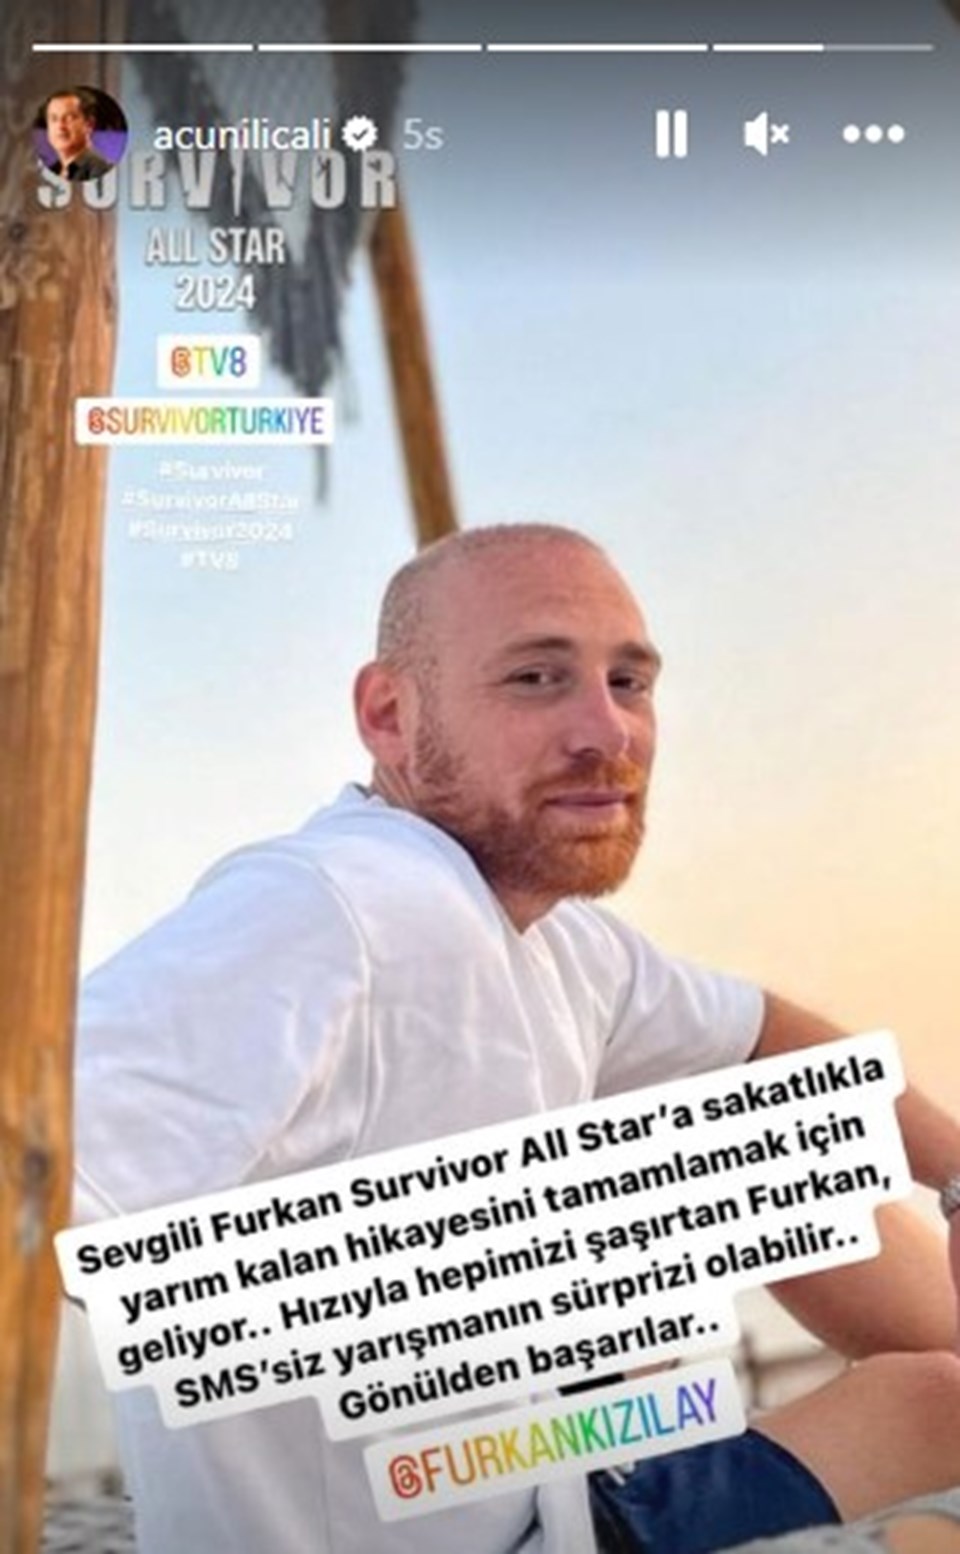 Furkan Kızılay, Survivor All Star kadrosunda - 1